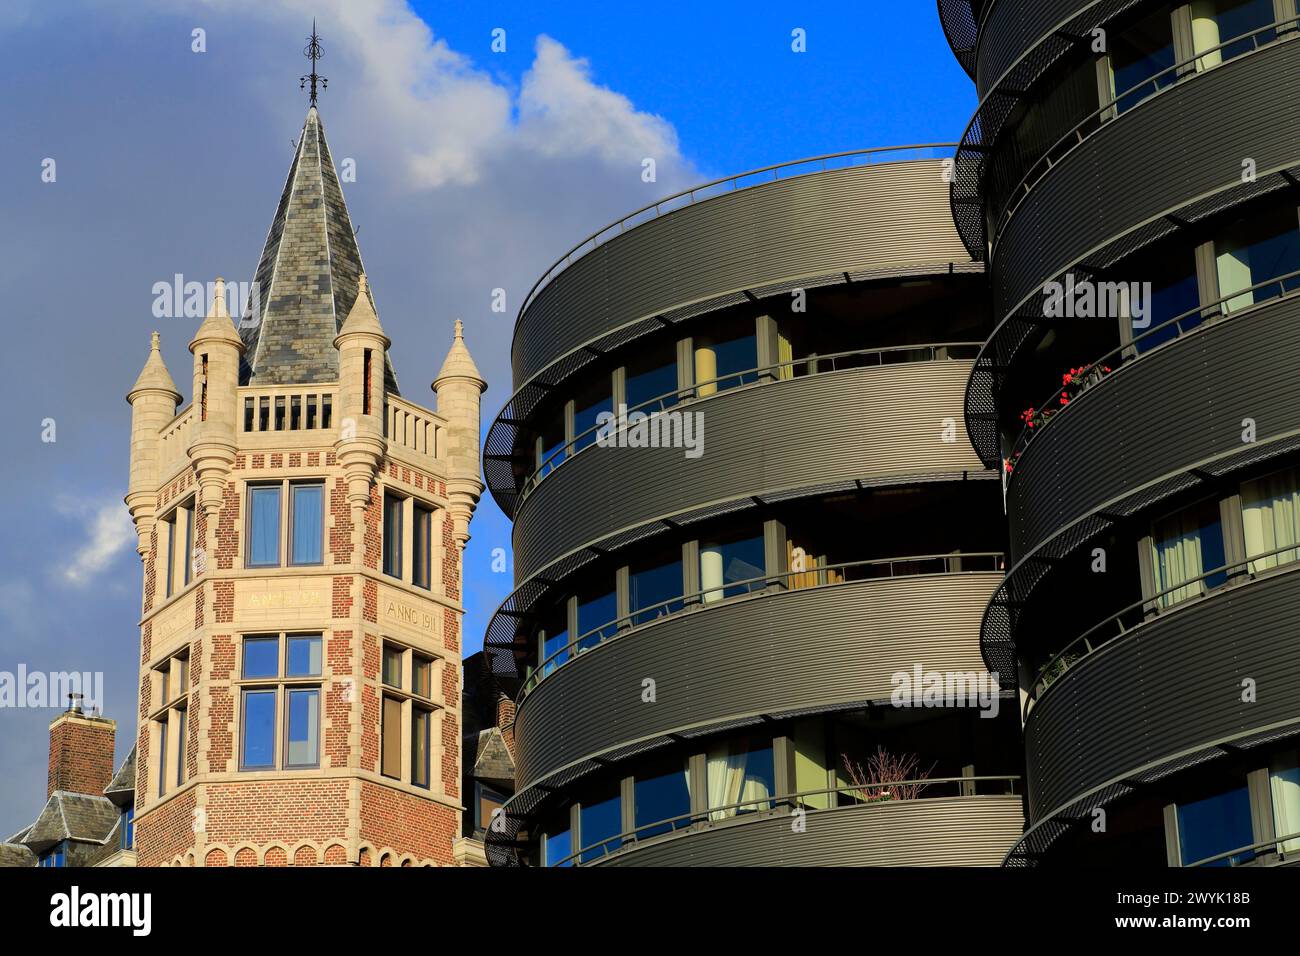 Belgium, Flanders, Antwerp, Ernest Van Dijckkaai, contrast between contemporary building and historic building Stock Photo